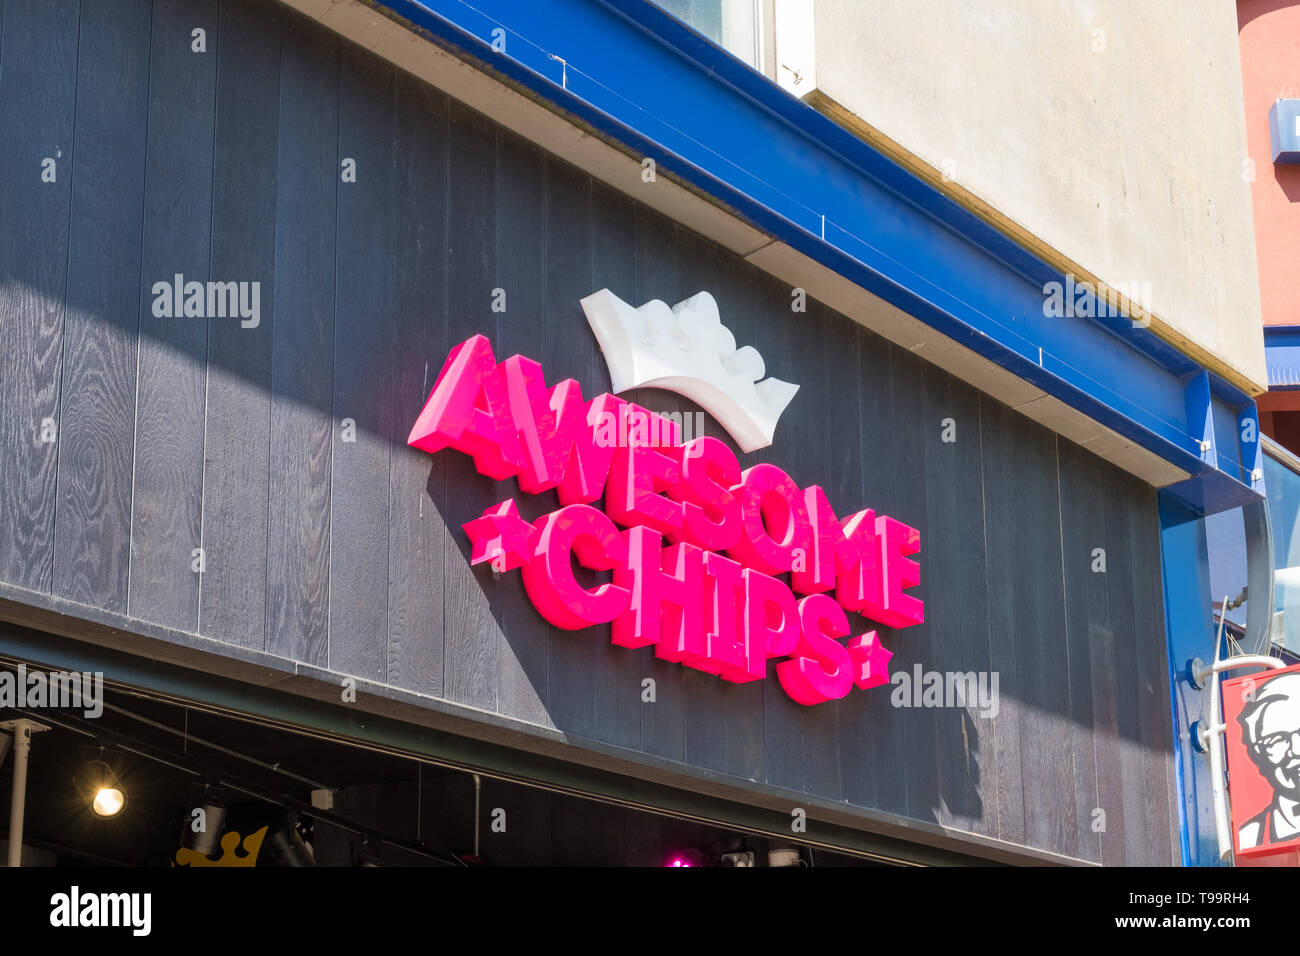 Leuchtend rosa Zeichen für fast food' Awesome Chips" in Birmingham, Großbritannien Stockfoto